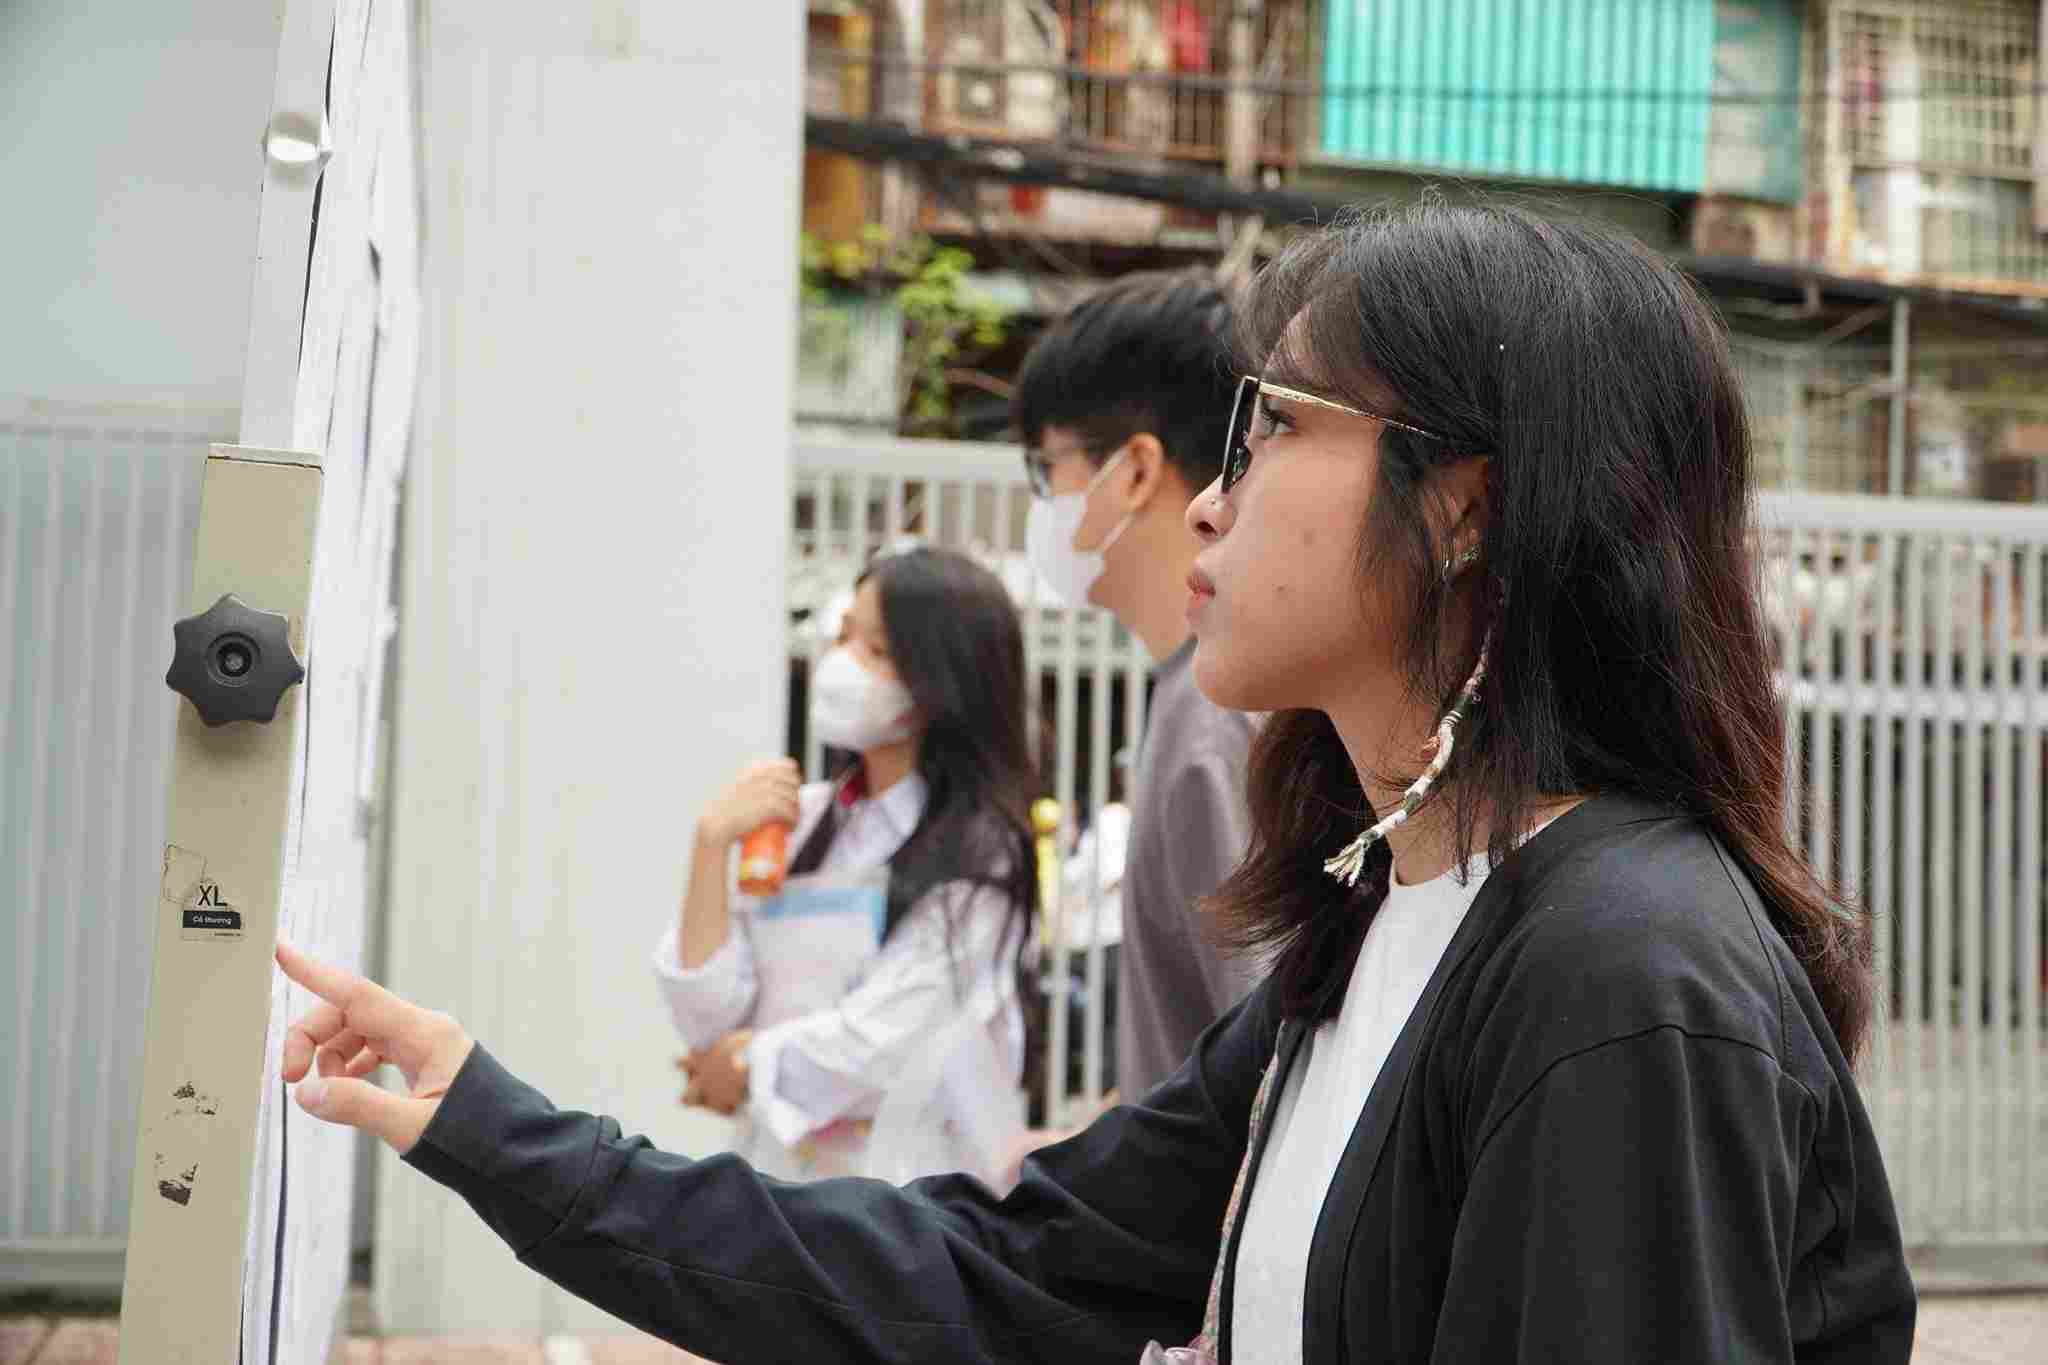 Em Nguyễn Minh Thư (học sinh lớp 12, Trường THPT Phạm Hồng Thái) kiểm tra phòng thi của mình. Ảnh: Vân Trang